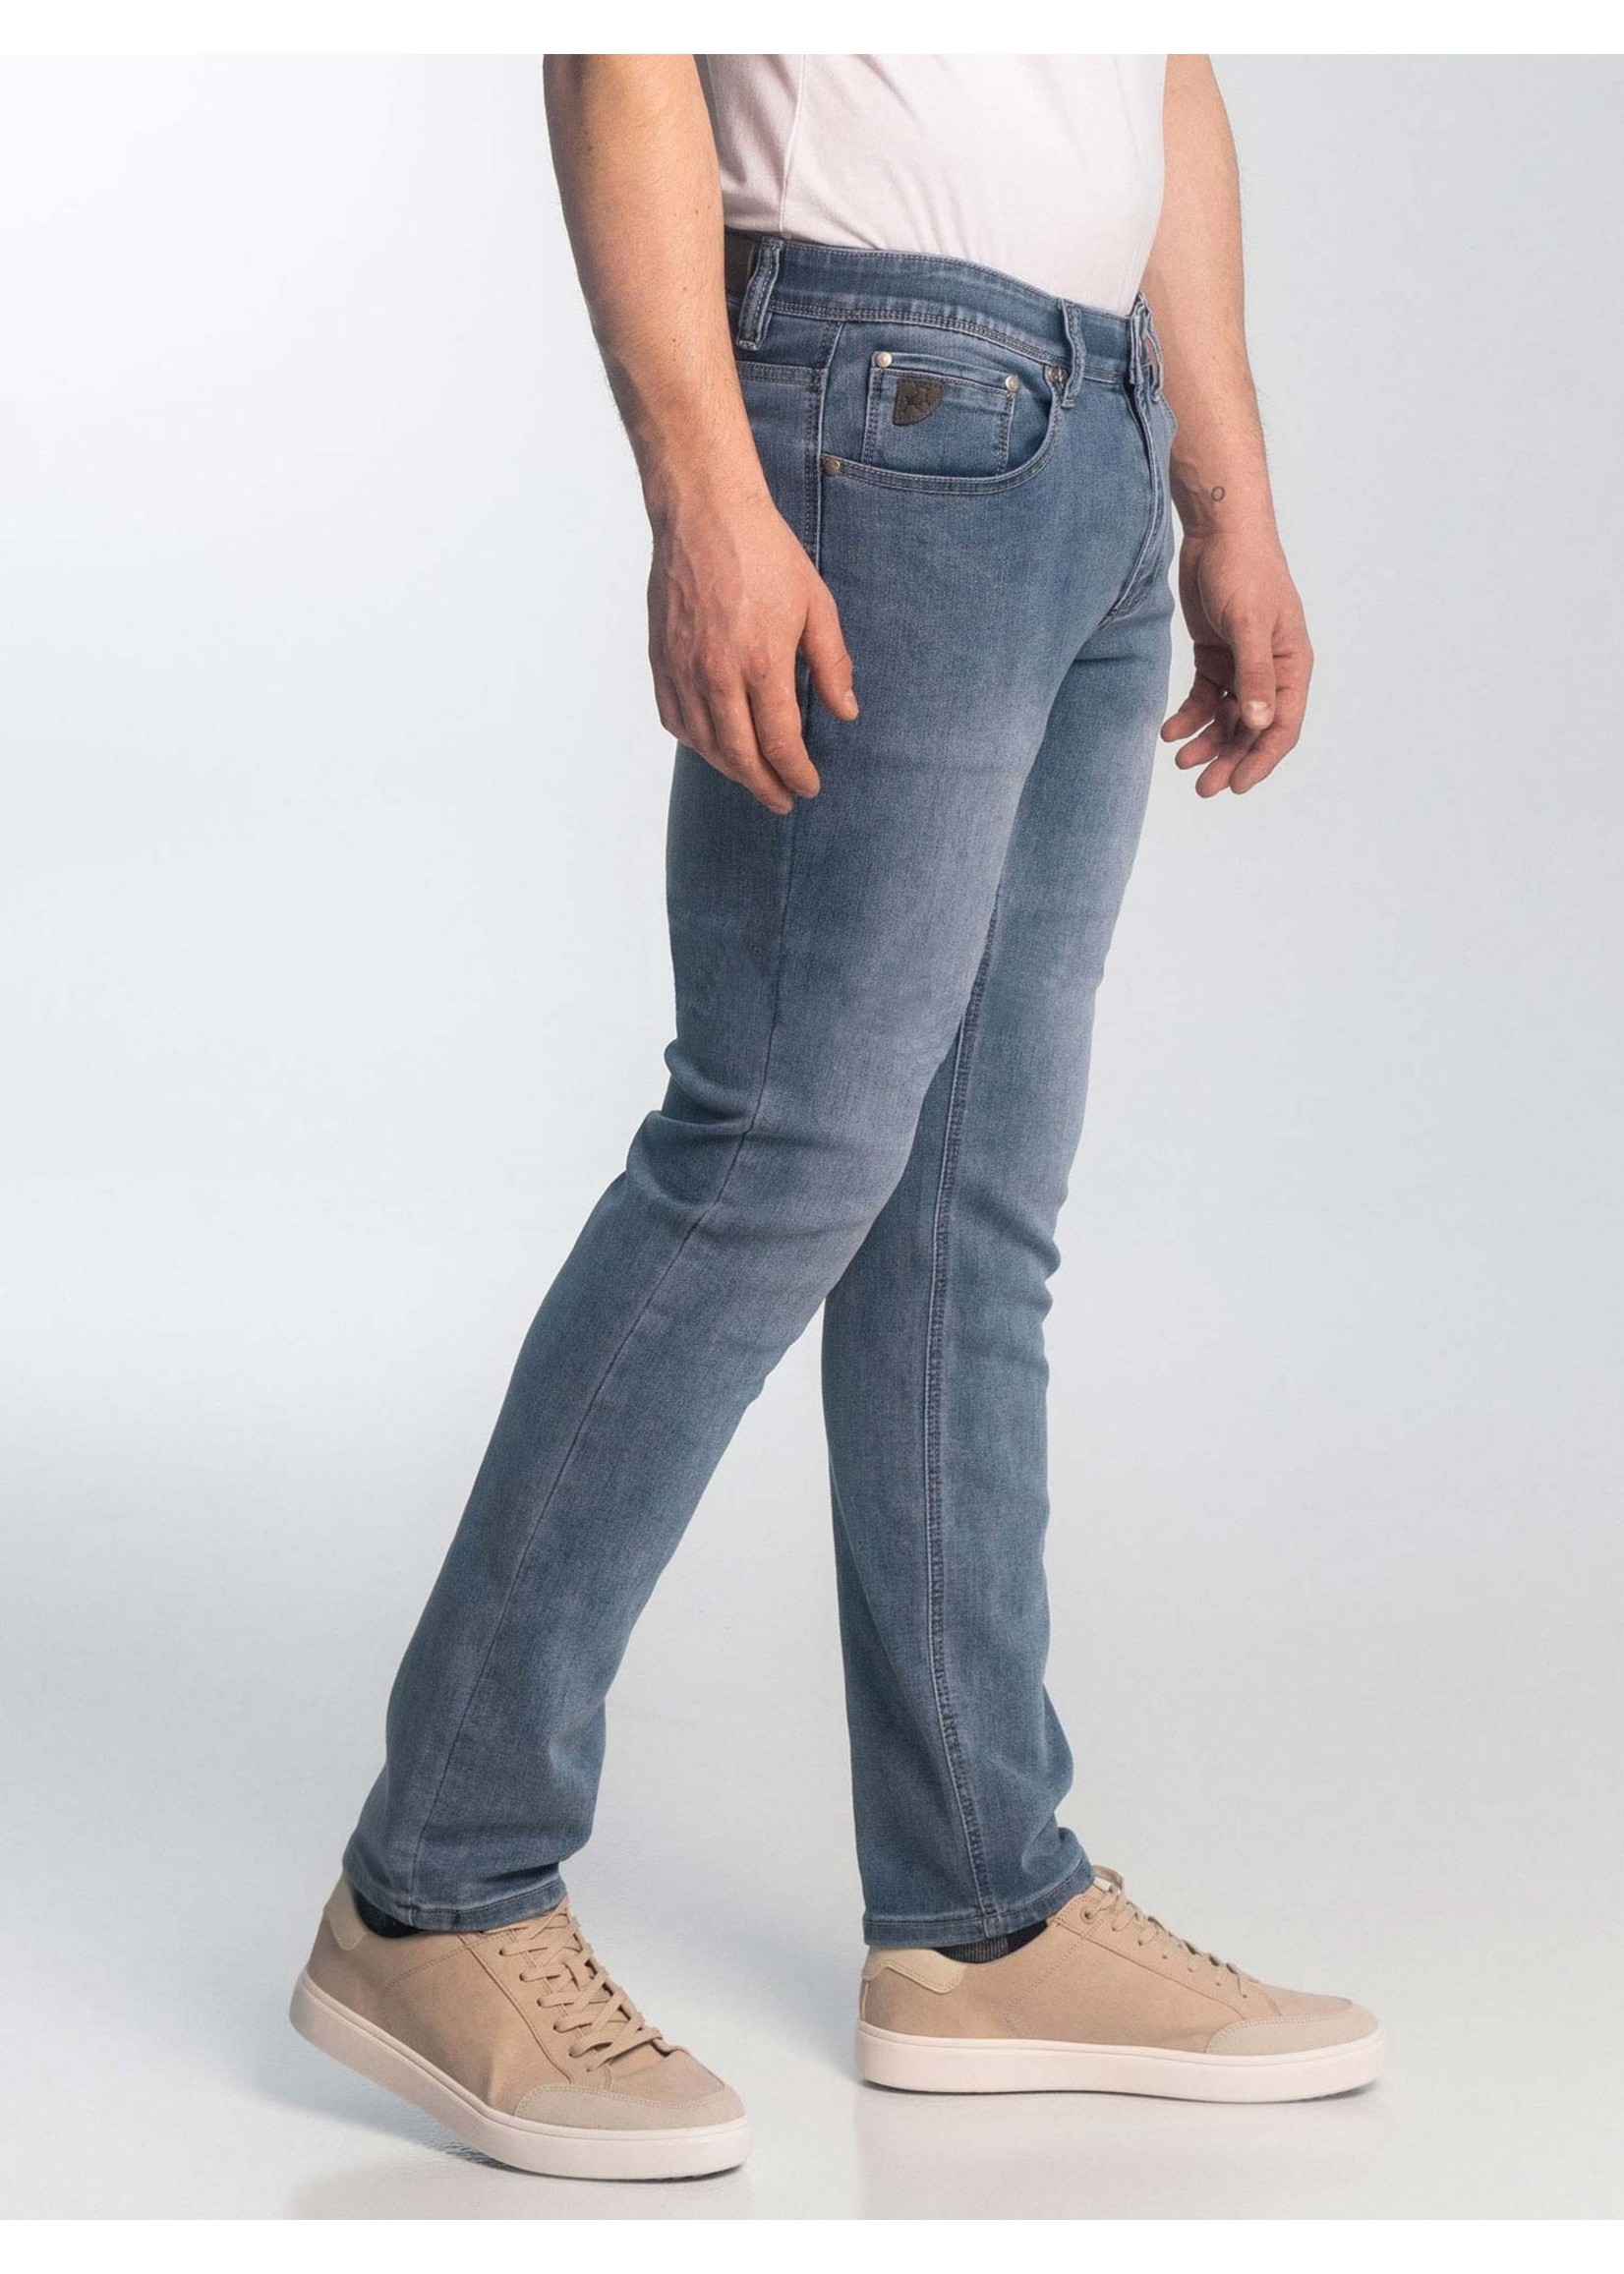 Knit Denim - Stretchy Jeans for Men